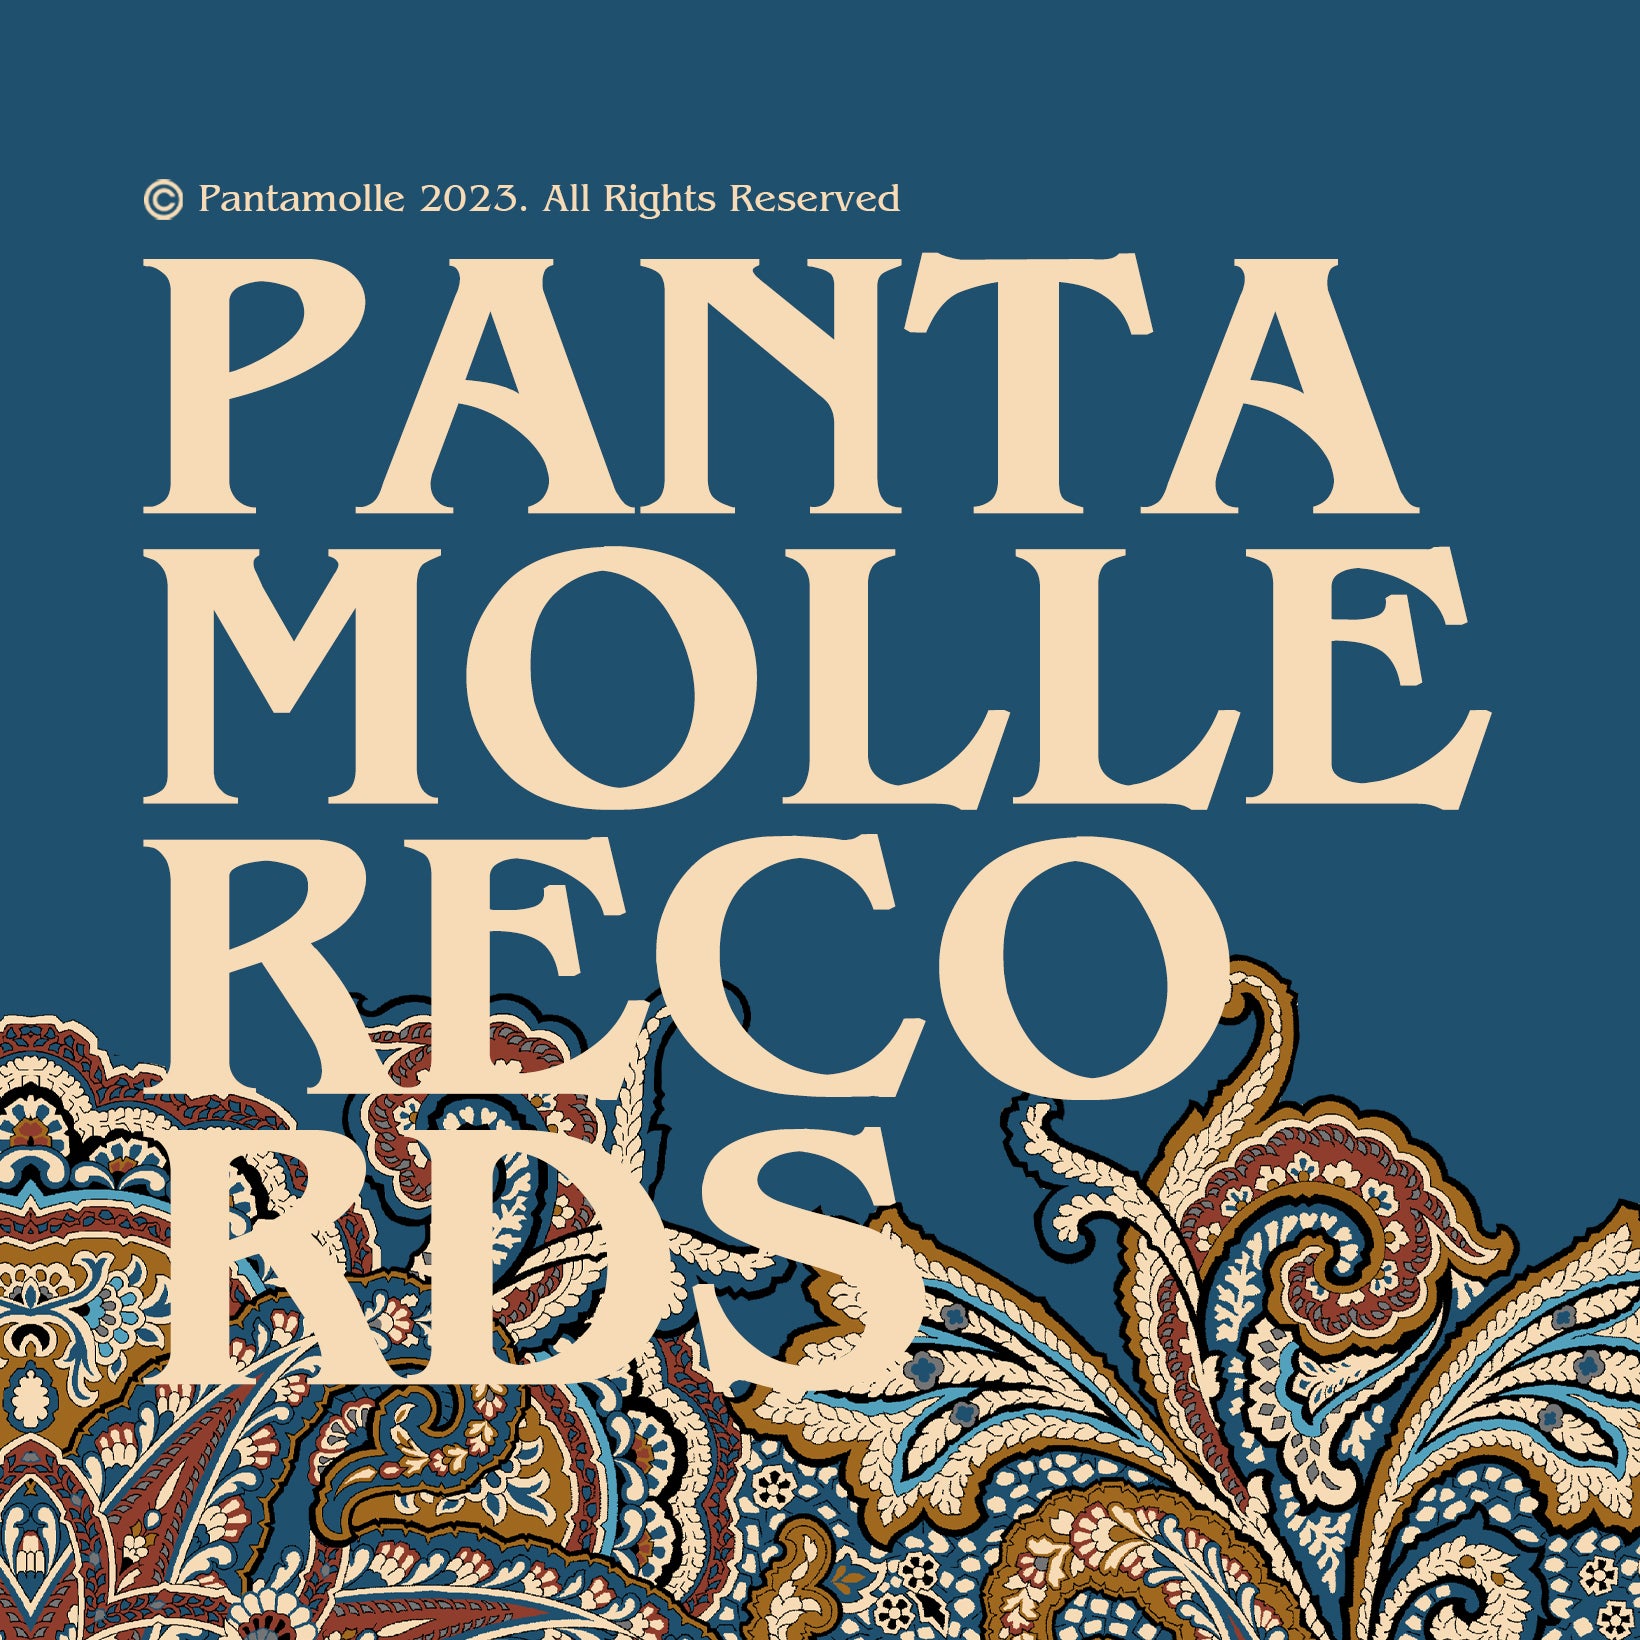 Il nuovo EP della Pantamolle Records